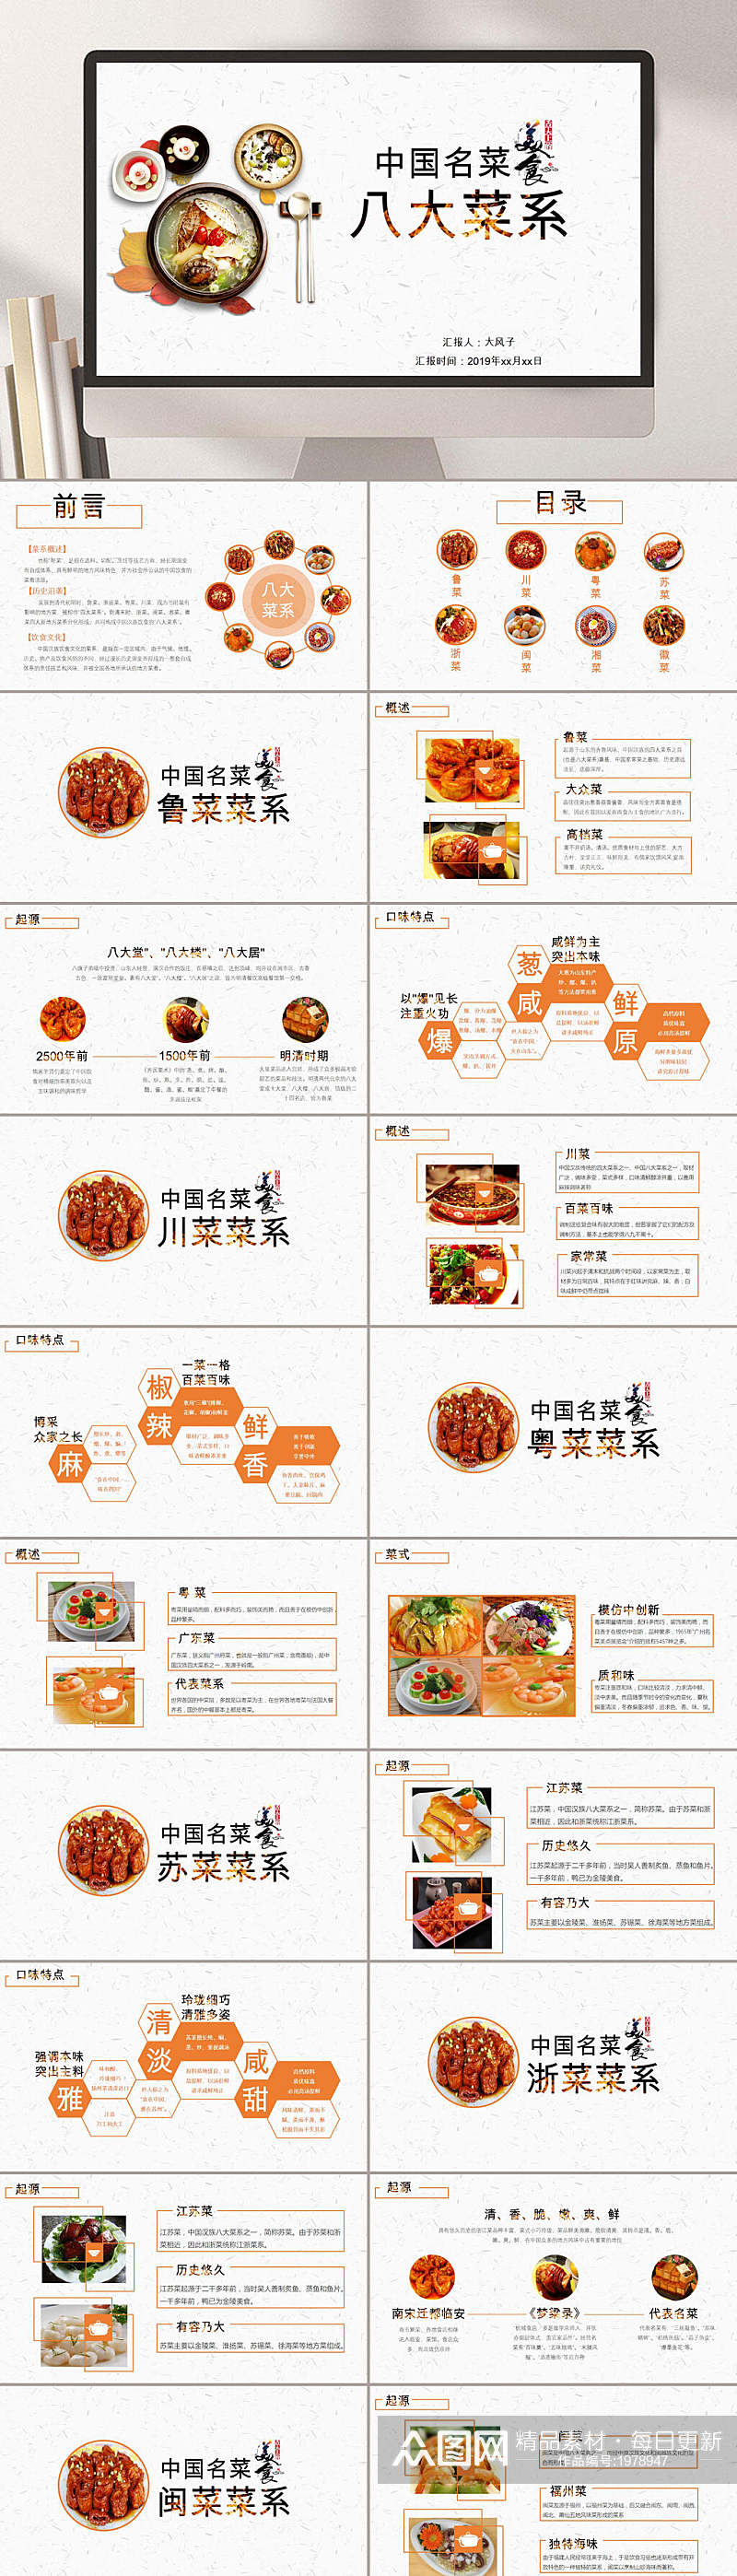 中国名菜美食八大菜系中餐PPT素材